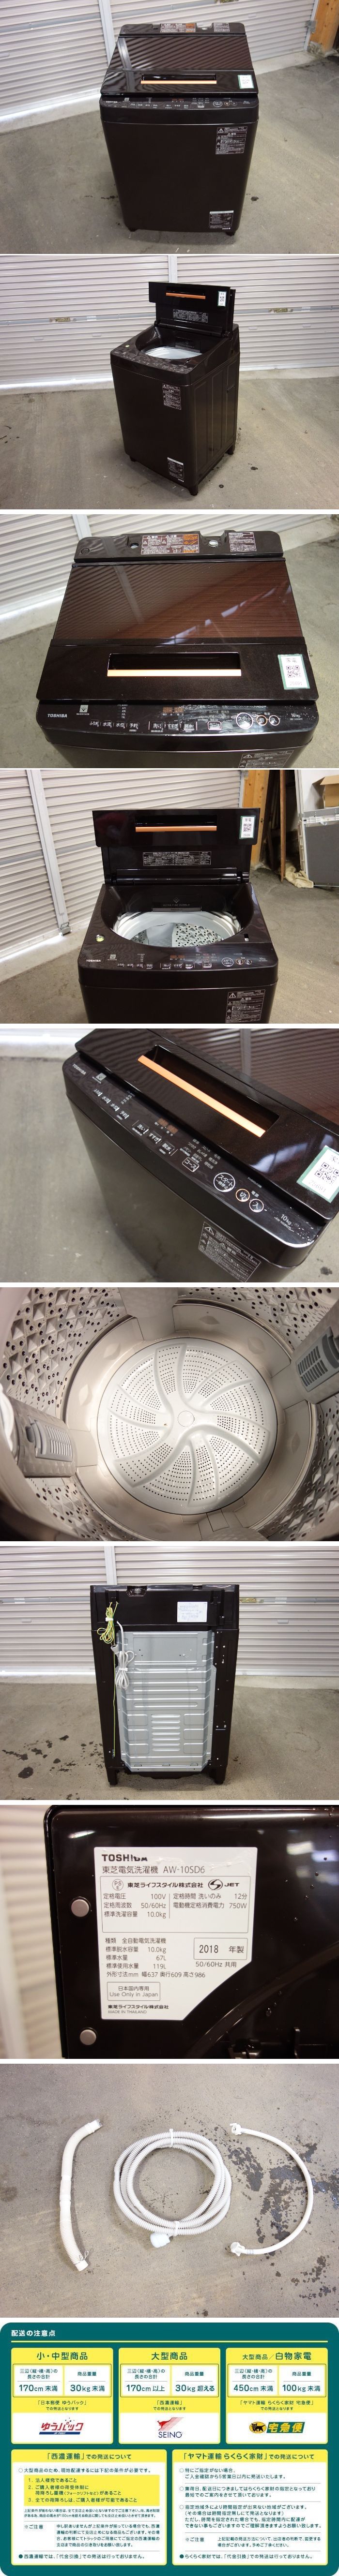 【激安価額】O▲東芝 洗濯機 2018年 10.0kg ZABOON ウルトラファインバブル洗浄 ガラストップ ステンレス槽 AW-10SD6 (25691) 5kg以上